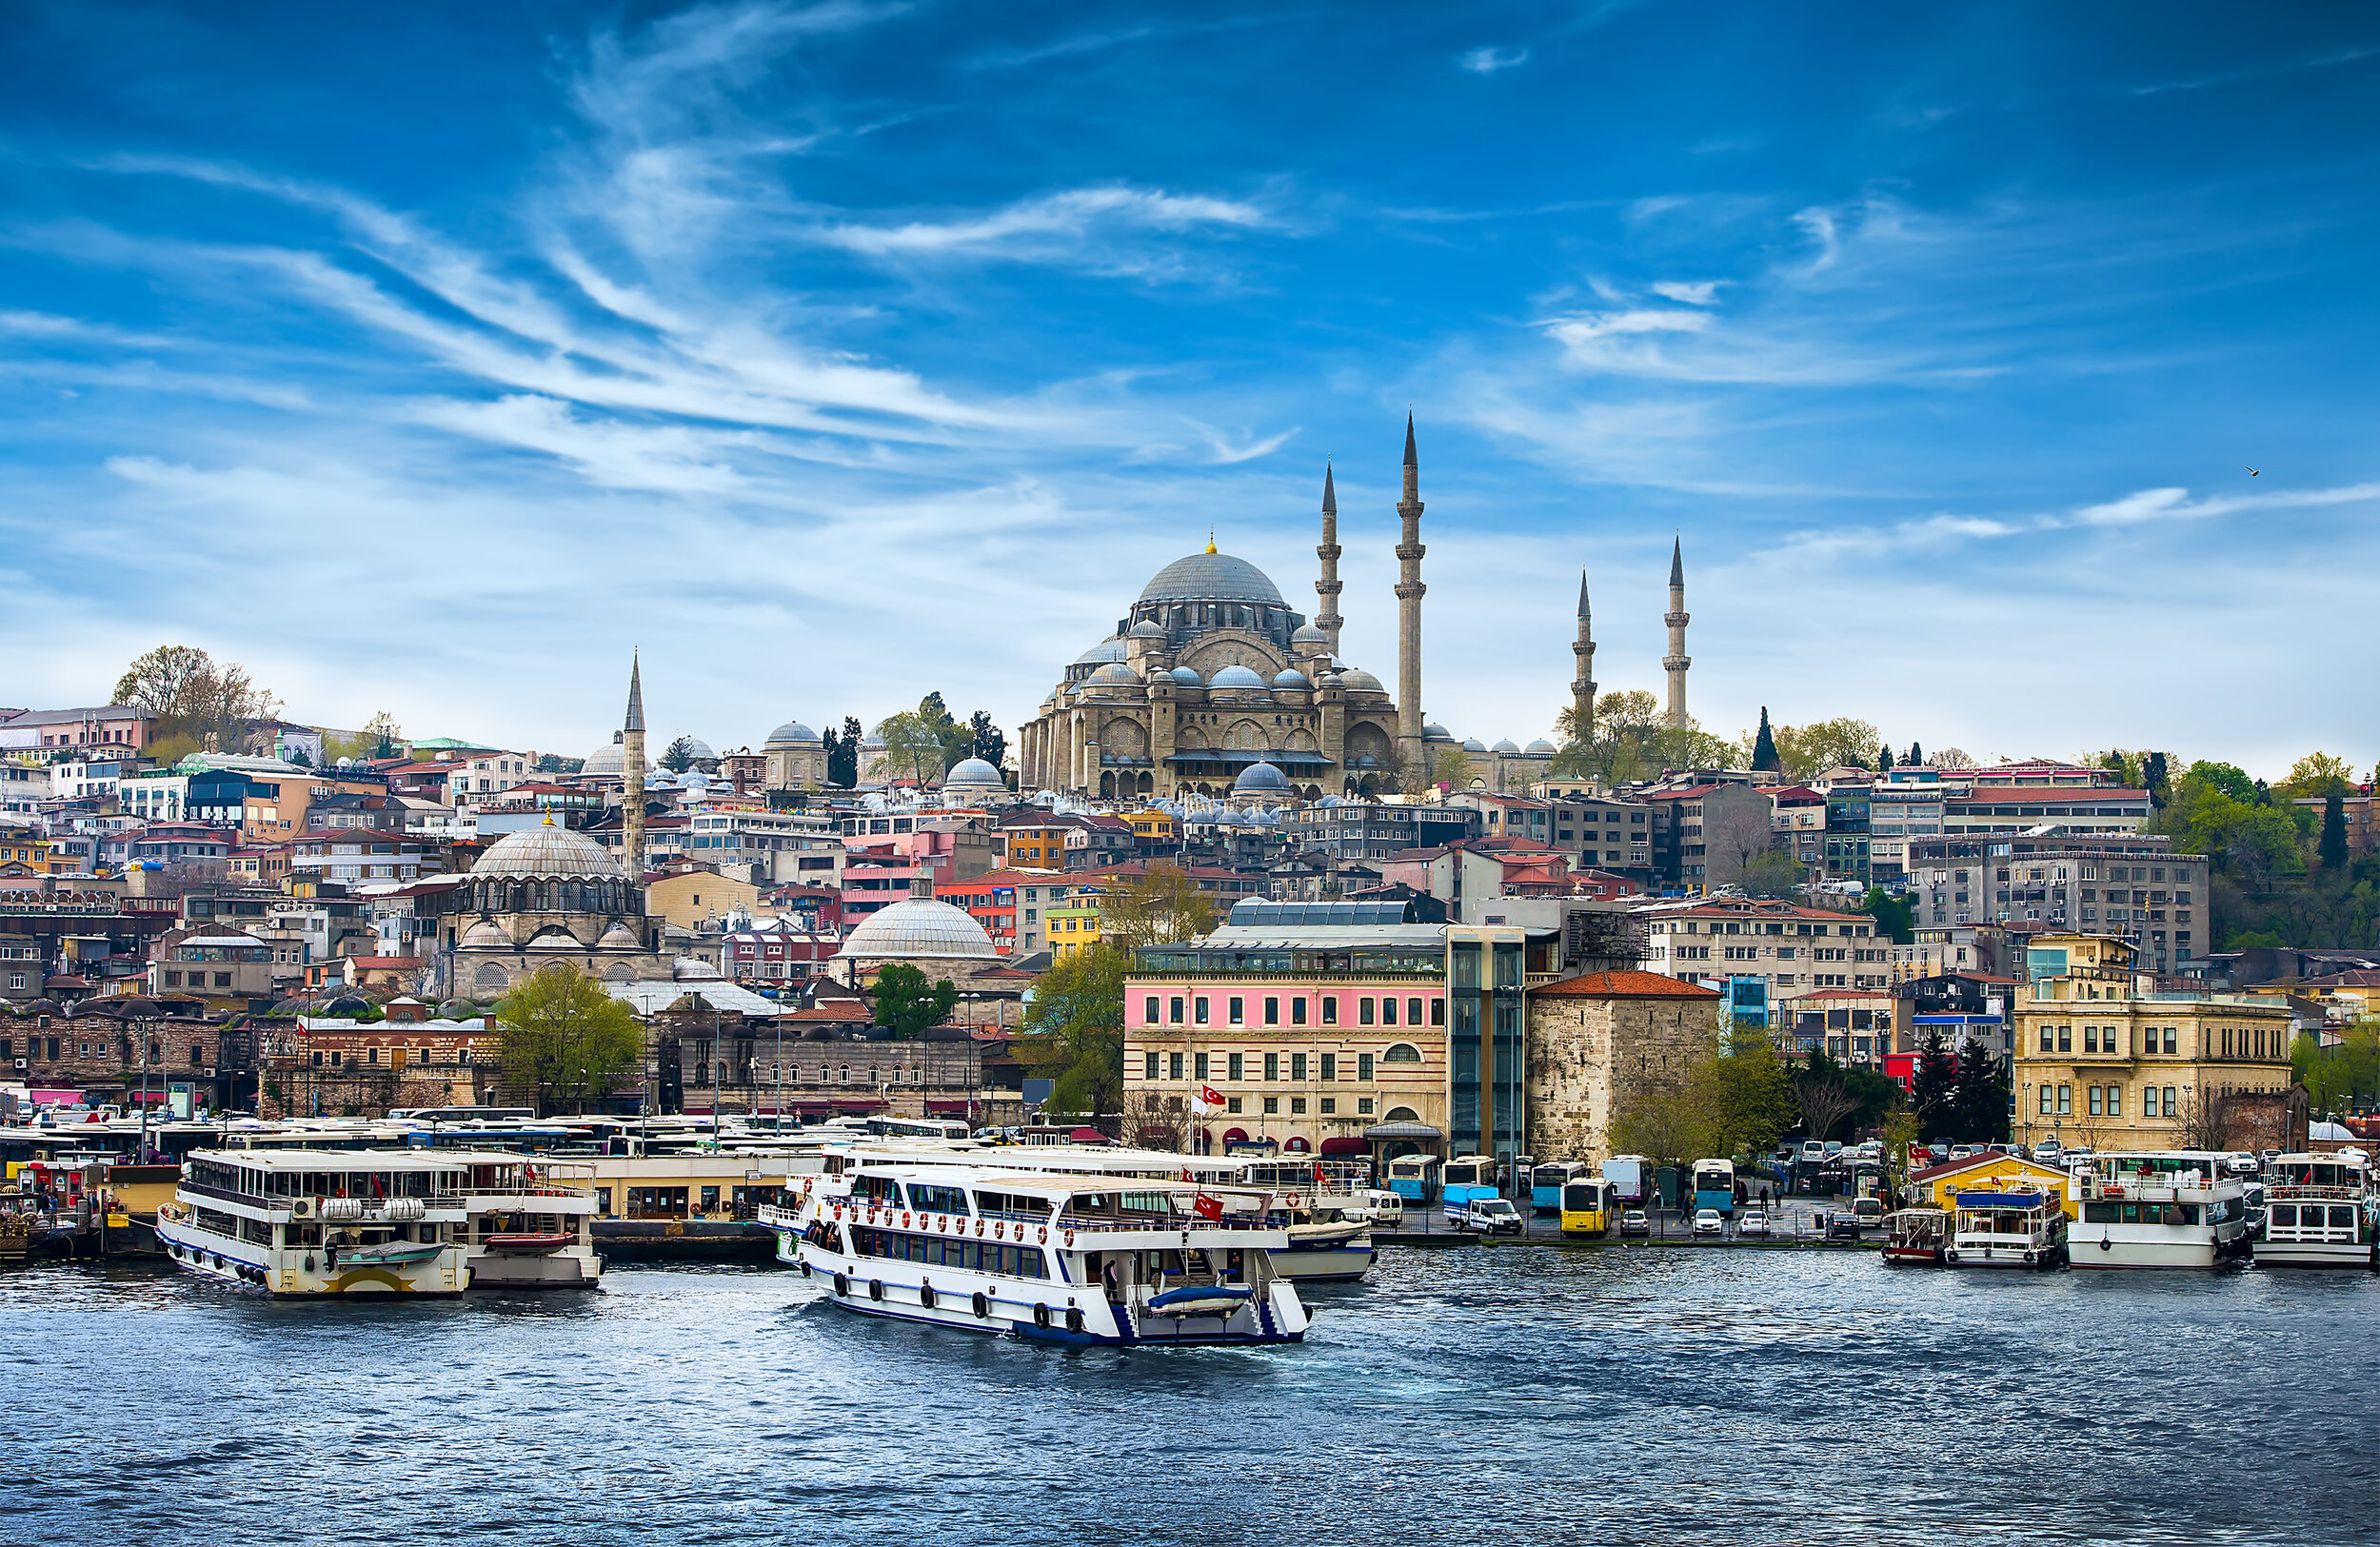 لا تزال اسطنبول على مضيق البوسفور مسكرة كما كانت دائما ، ويتم تعيين وصفة لدافني هنا.